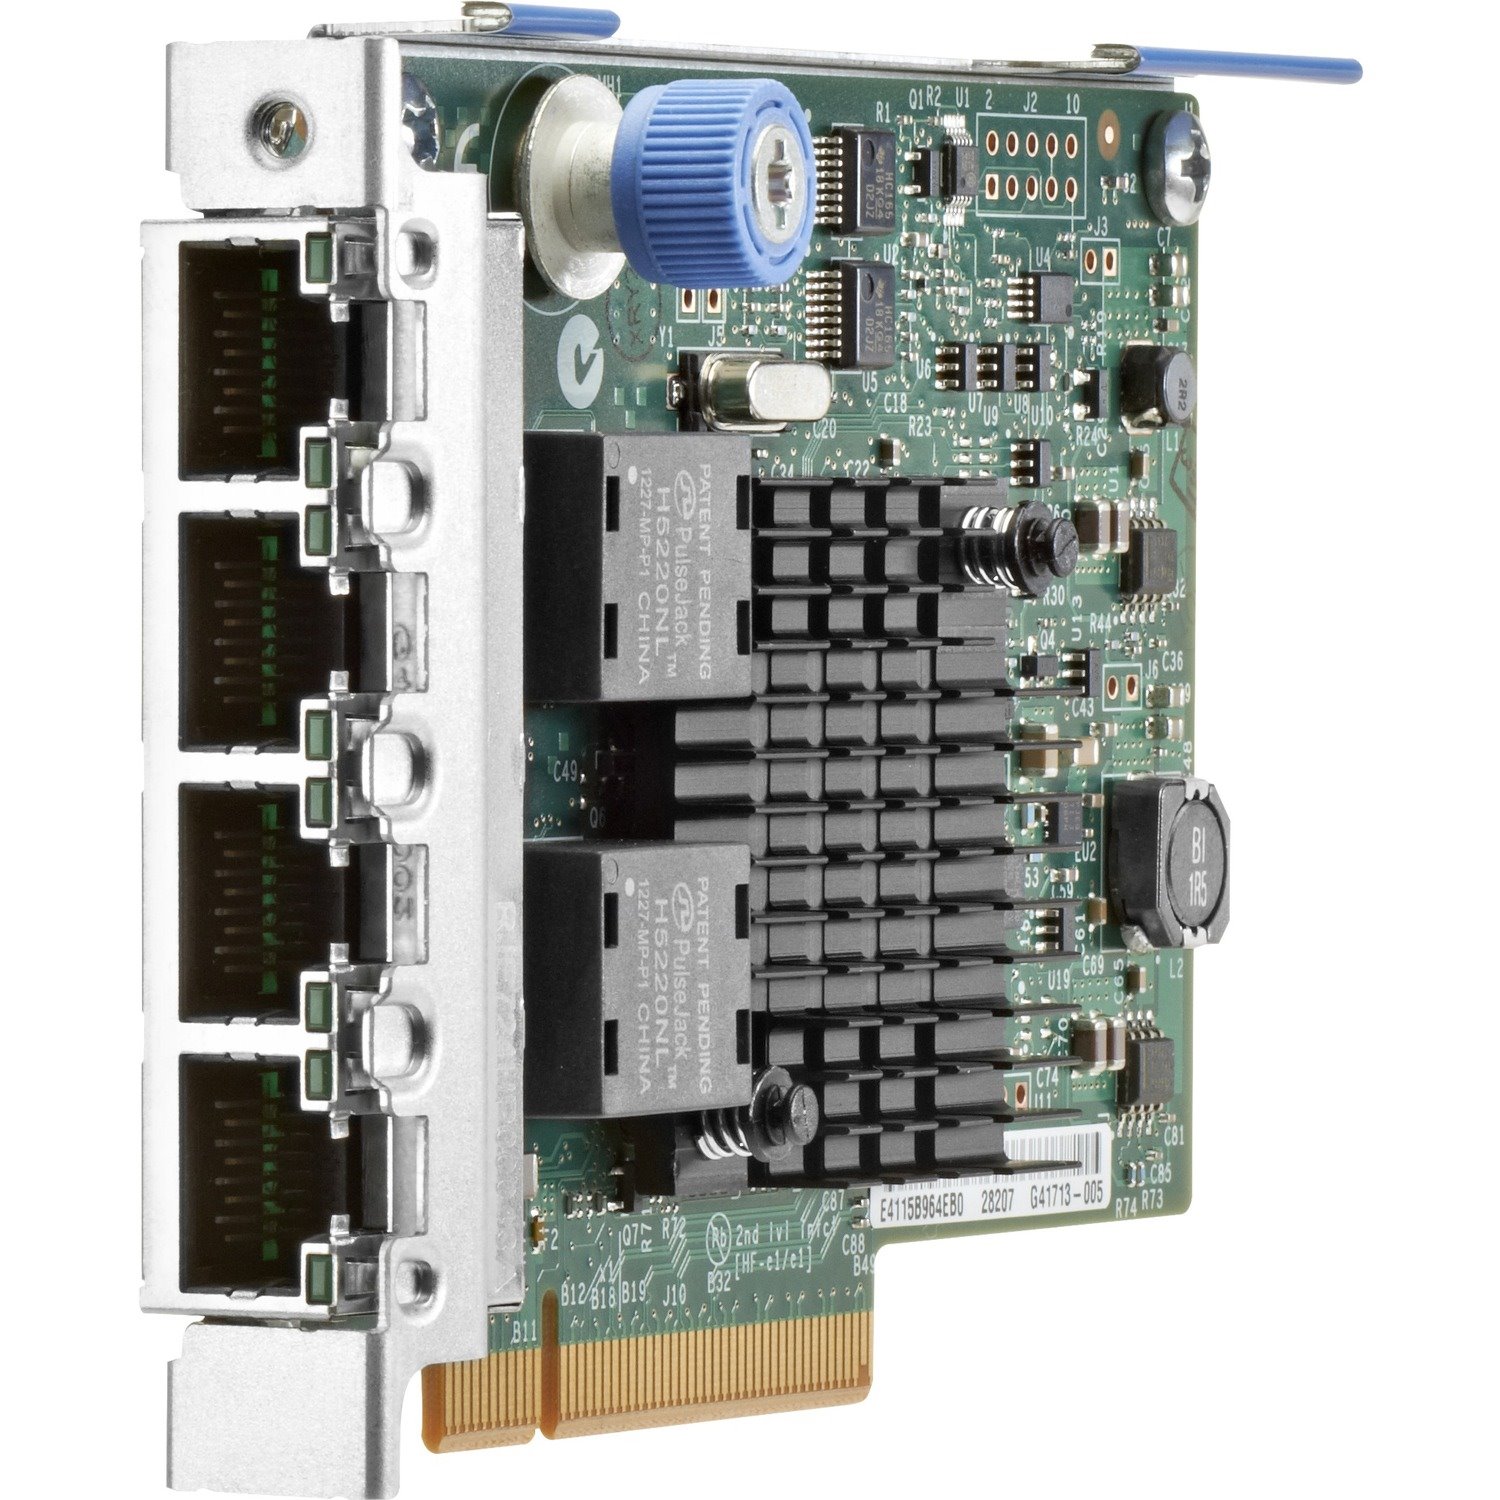 HPE 366FLR Gigabit Ethernet Card for PC - 10/100/1000Base-T - Plug-in Card